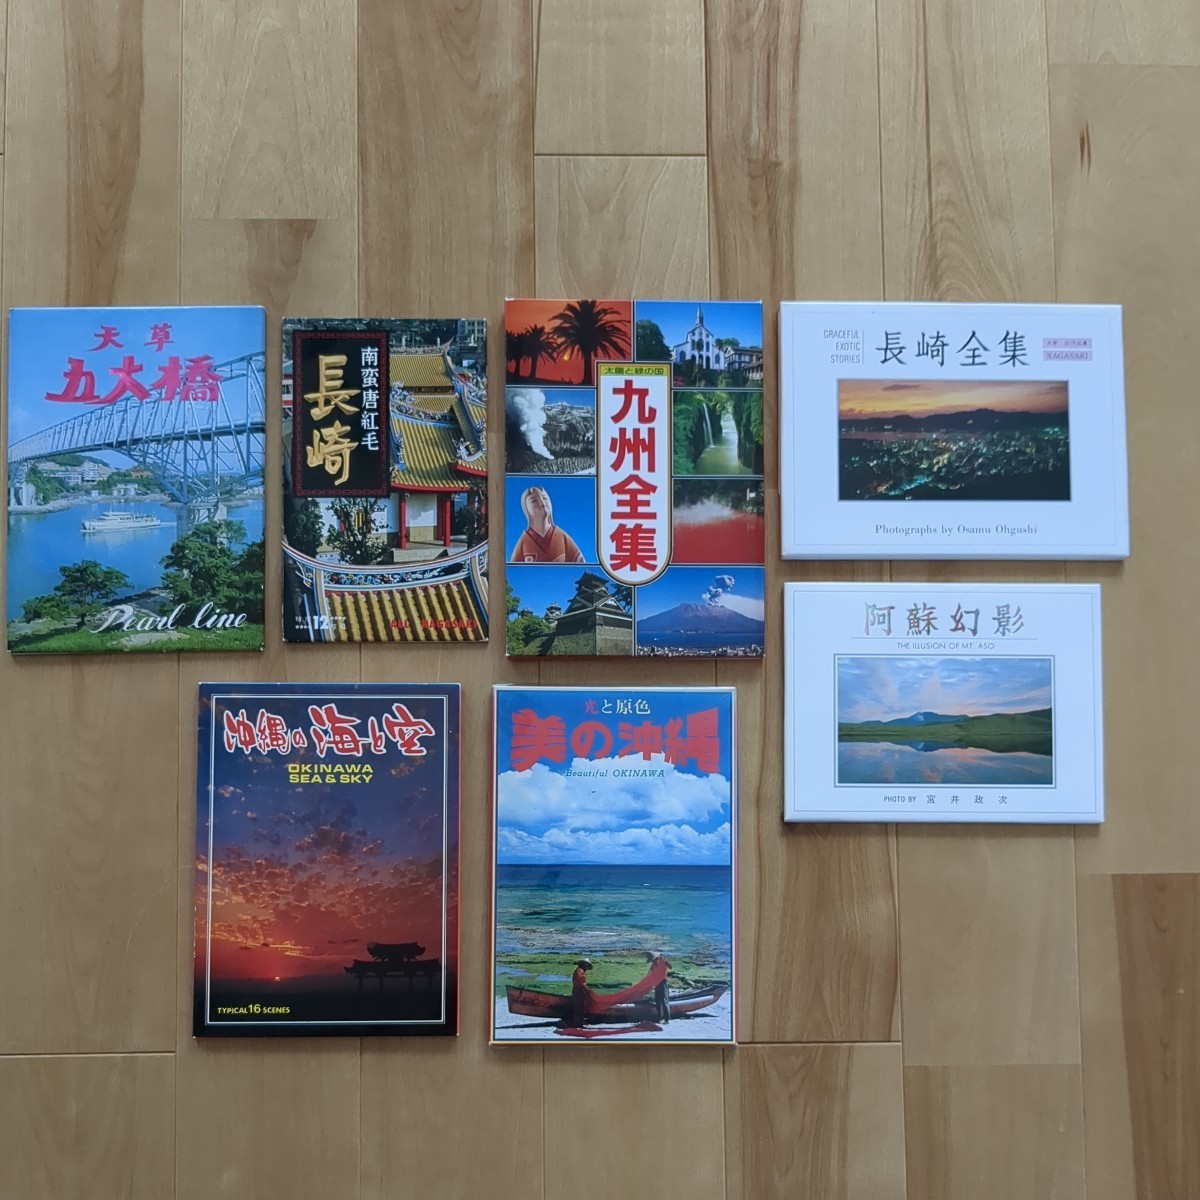  открытка с видом Kyushu Okinawa Showa 40 годы 50 годы 60 годы Showa Retro открытка с видом туристический название место достопримечательность 